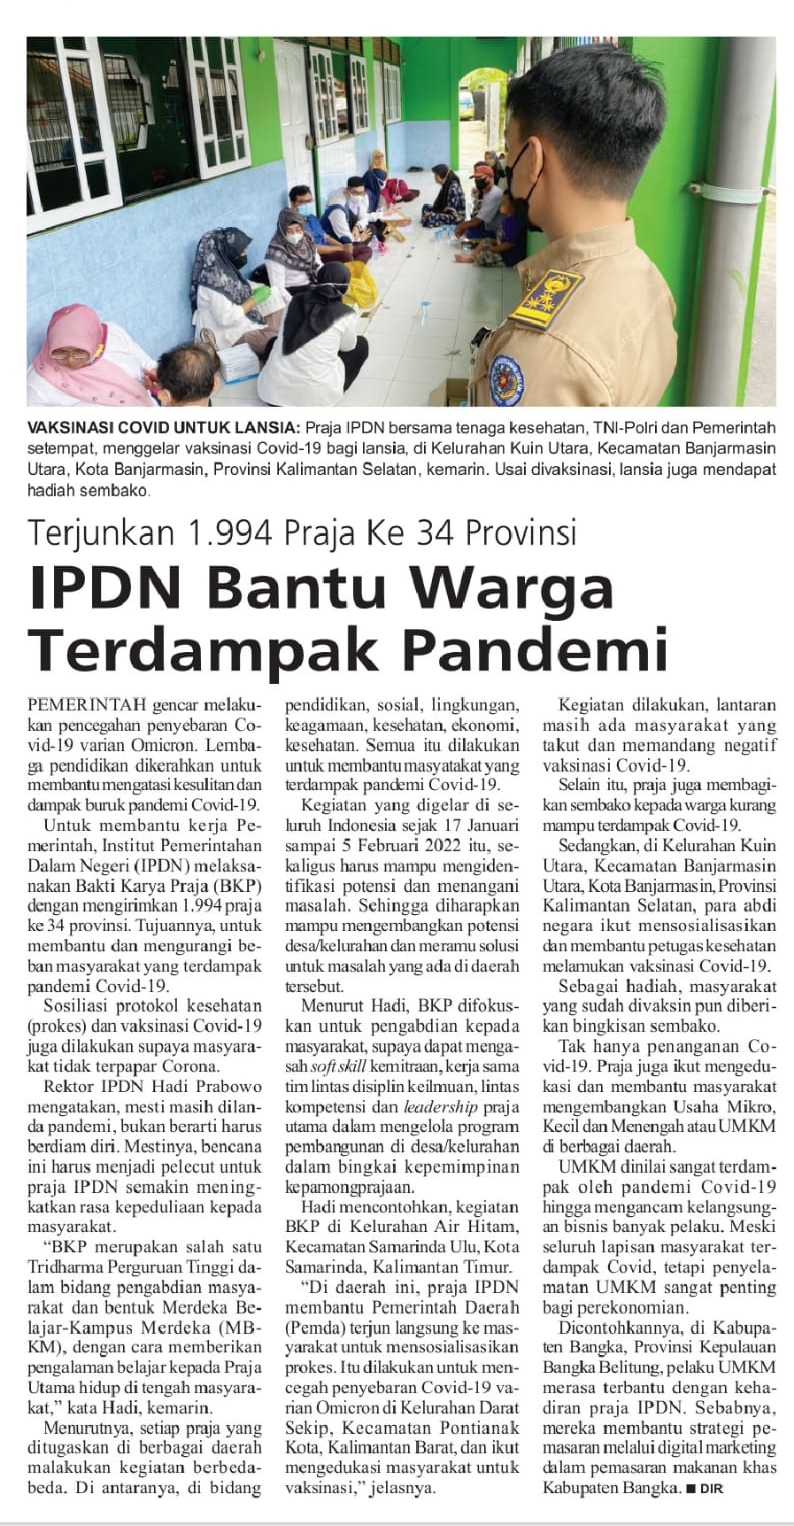 IPDN, ipdn, IPDN Terjunkan 1.994 Praja Ke 34 Provinsi untuk Bantu Warga